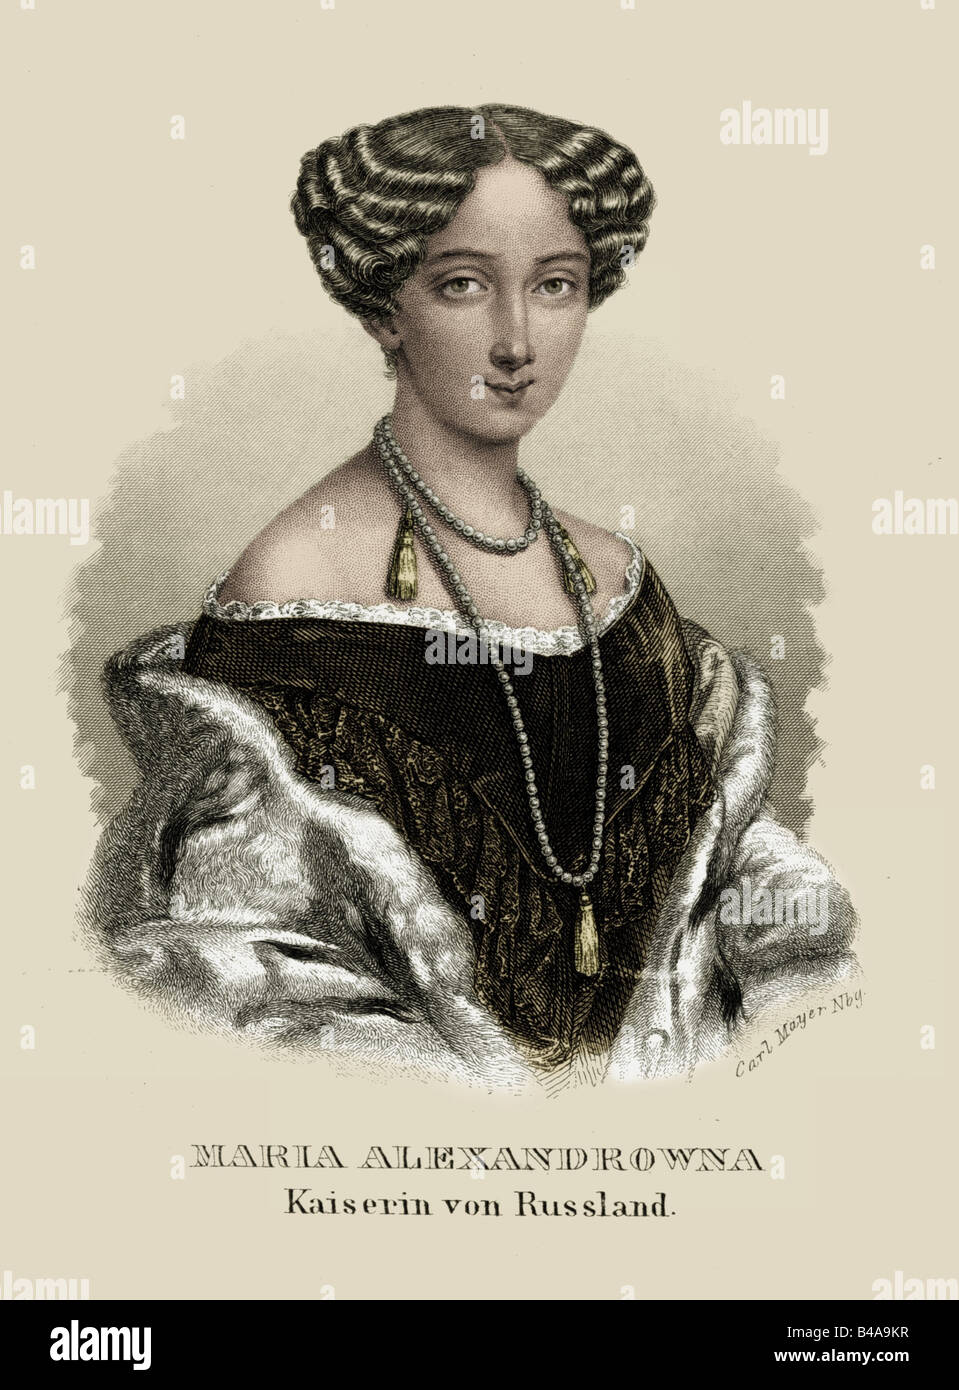 Maria Alexandrovna, 8.8.1824 - 3.6.1880, imperatrice di Russia 18.2.1855 - 3.6.1880, ritratto, acciaio, incisione del XIX secolo, poi colorati, , artista del diritto d'autore non deve essere cancellata Foto Stock